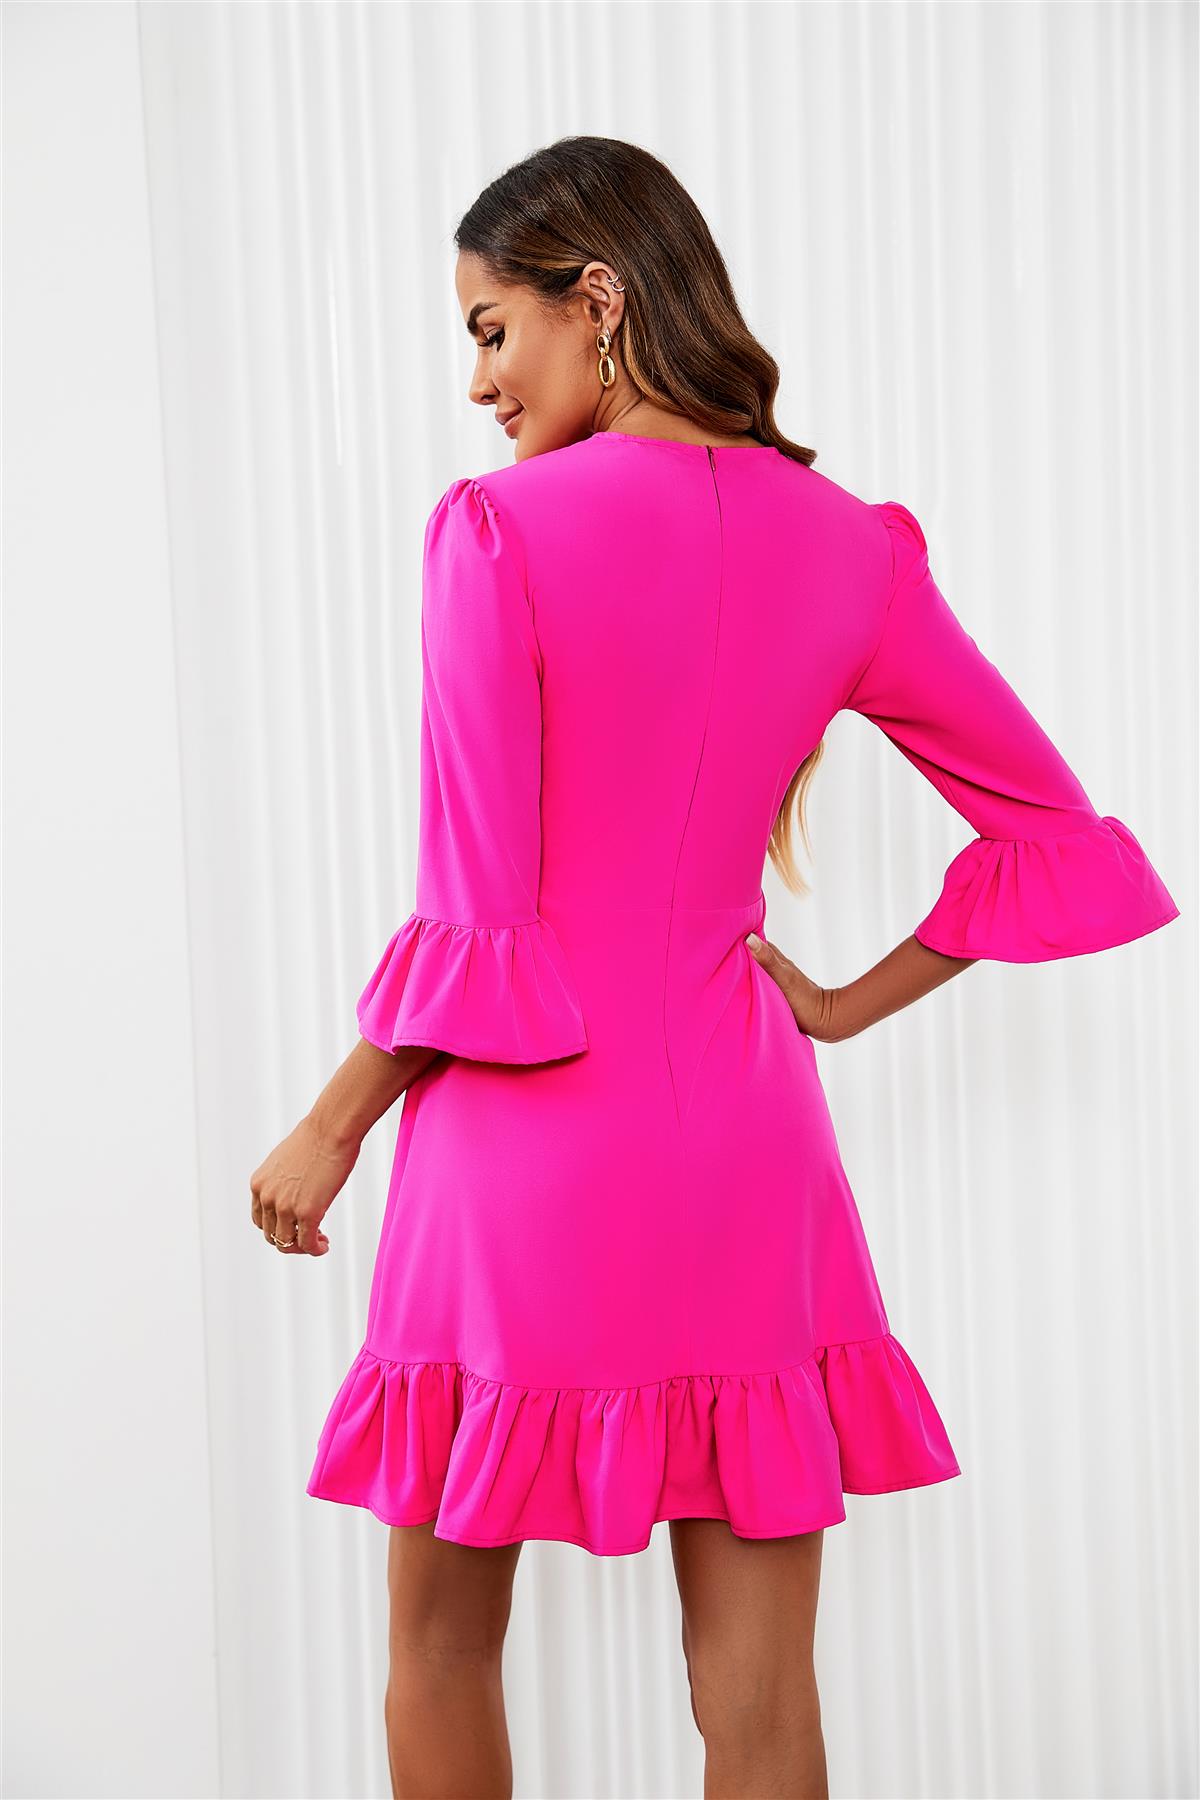 Frill Mini Dress In Fuchsia Pink FS563-Fuchsia